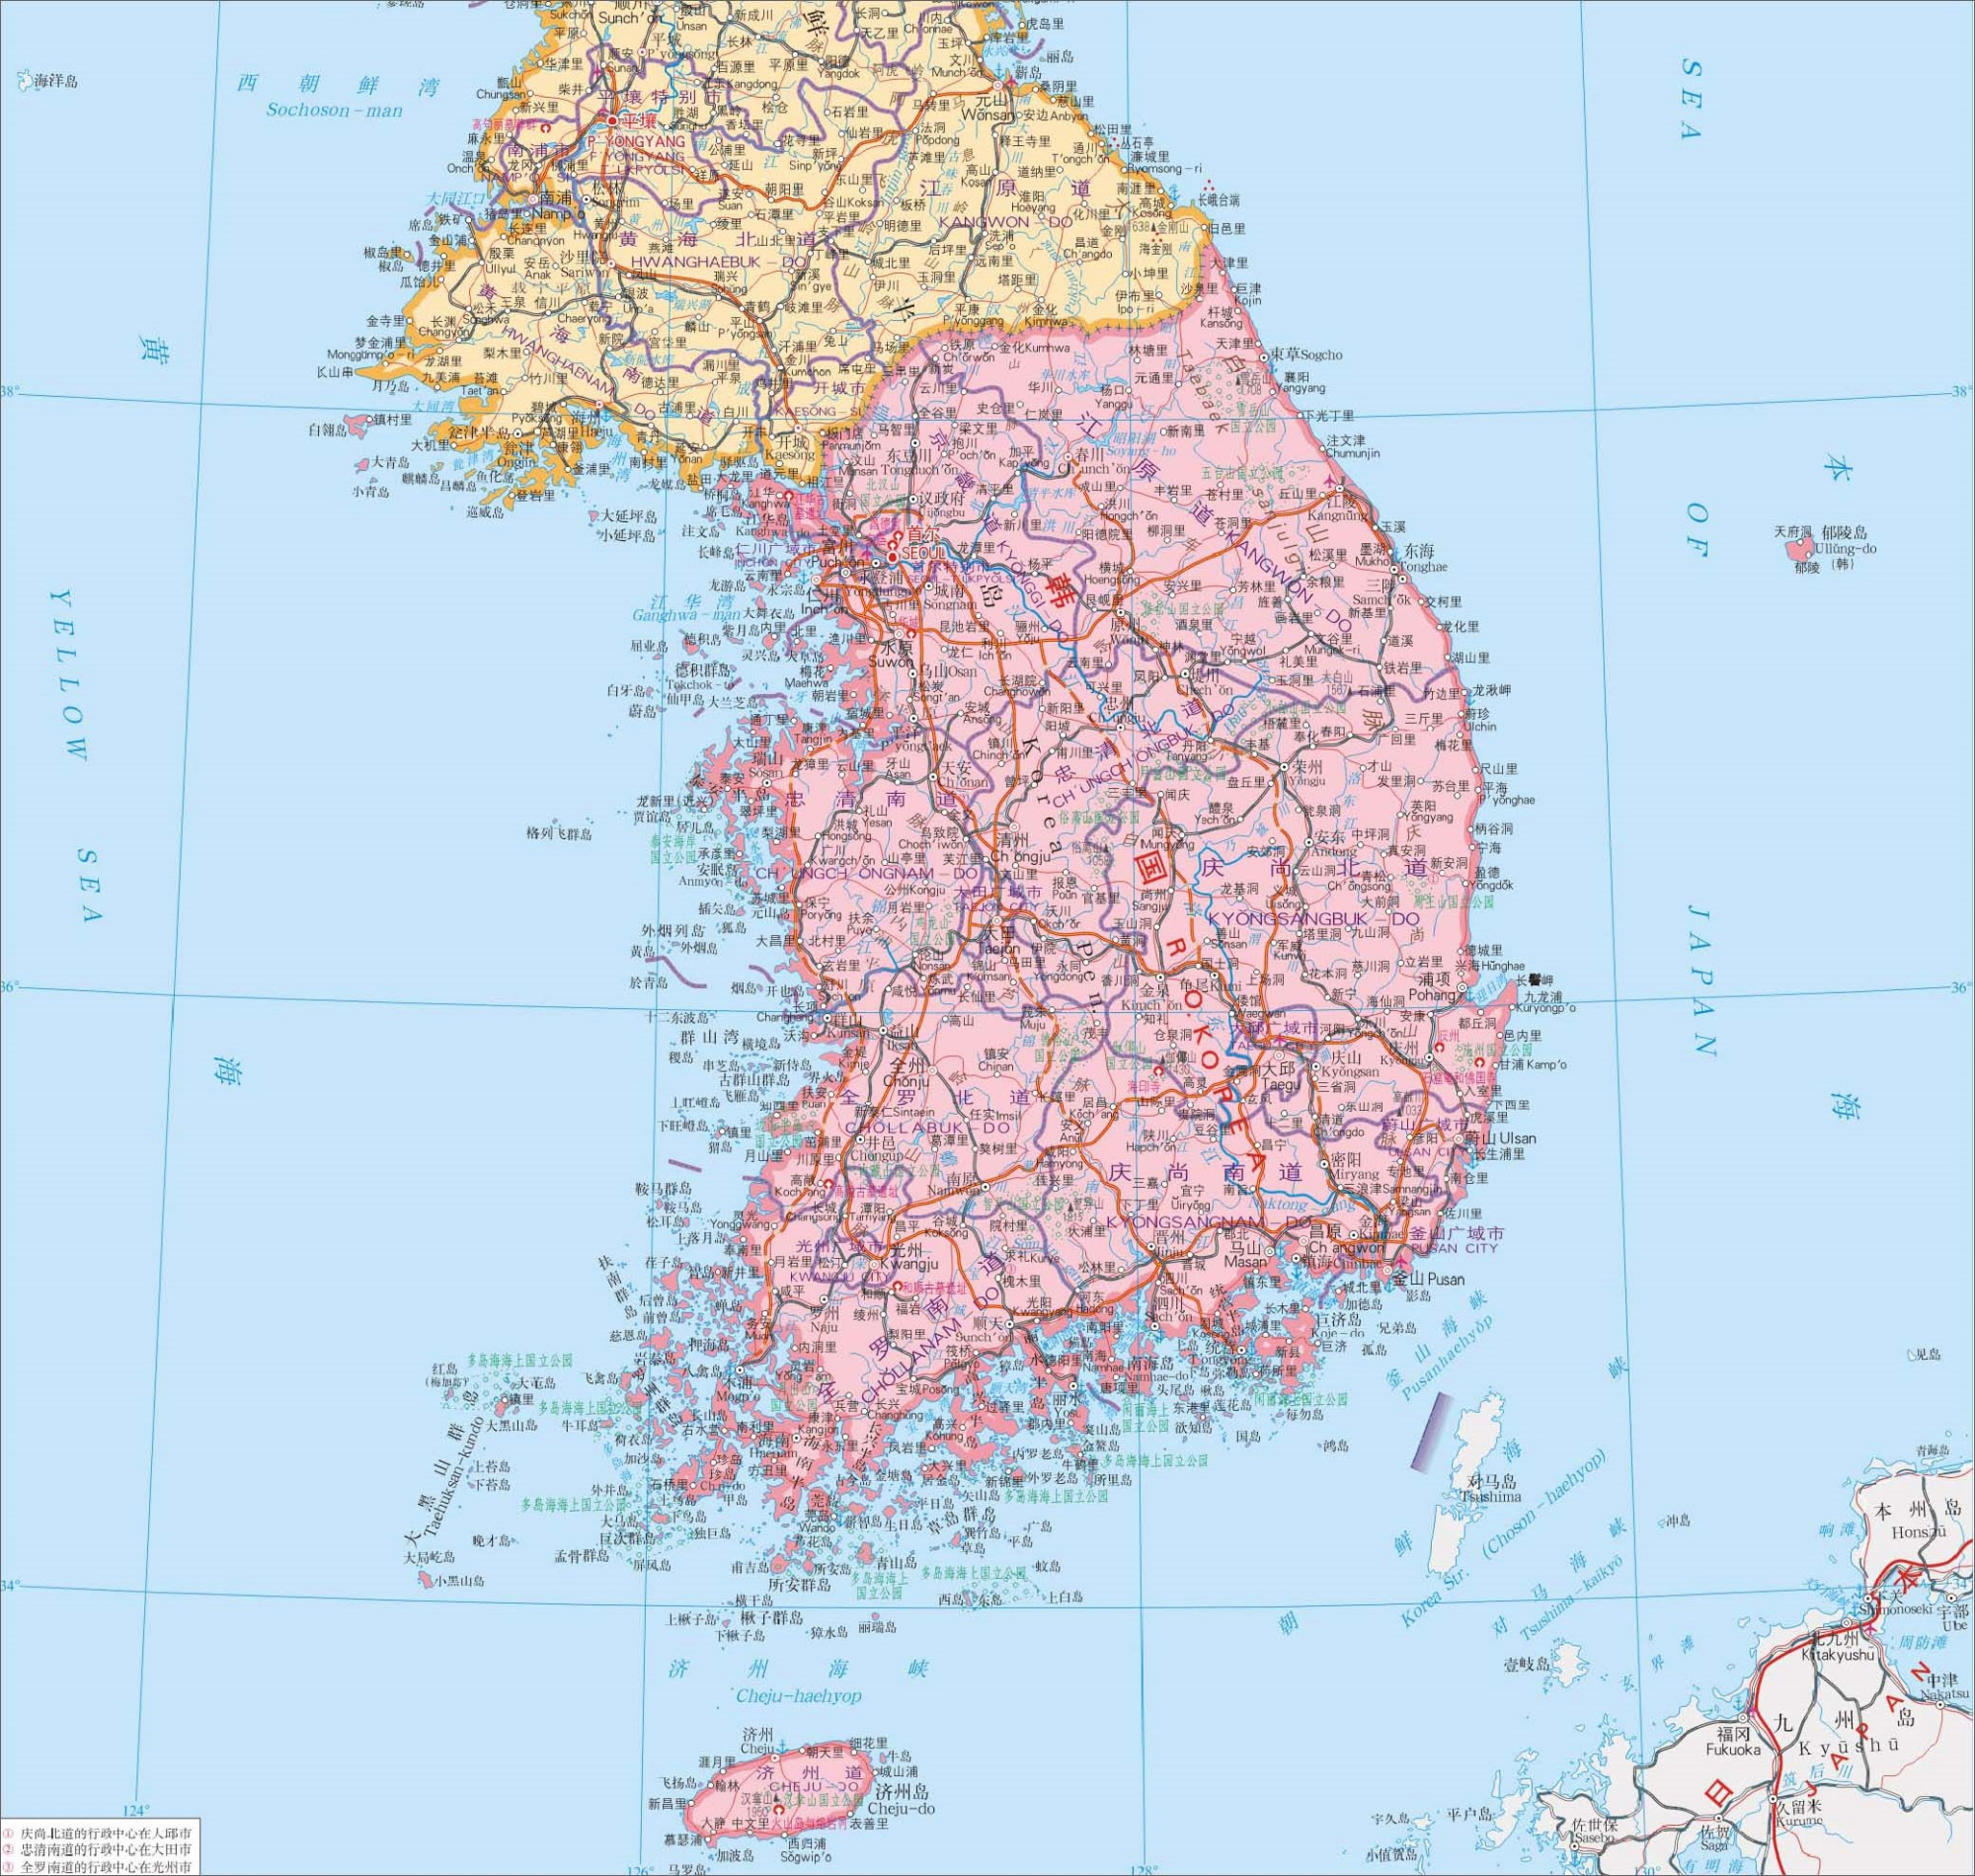 当然在以前也被叫为"汉城",首尔位于韩国西北部,地处汉江流域,位于